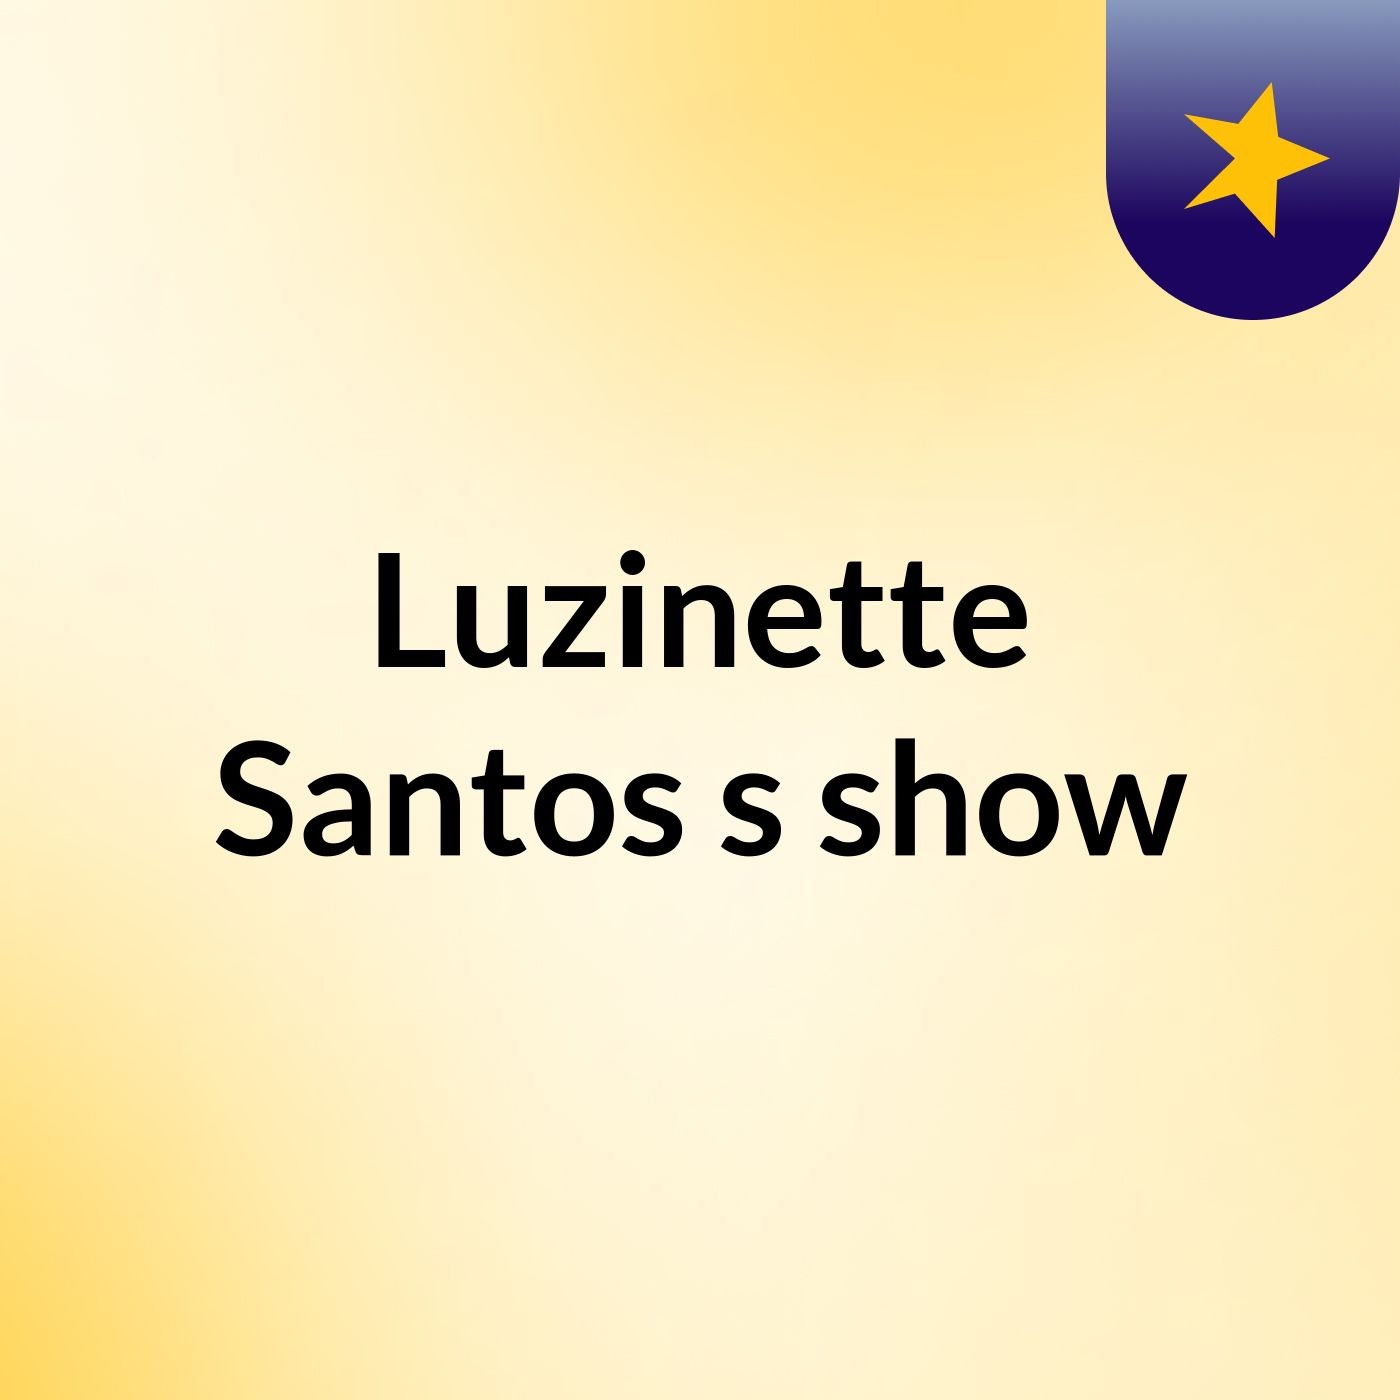 Luzinette Santos's show